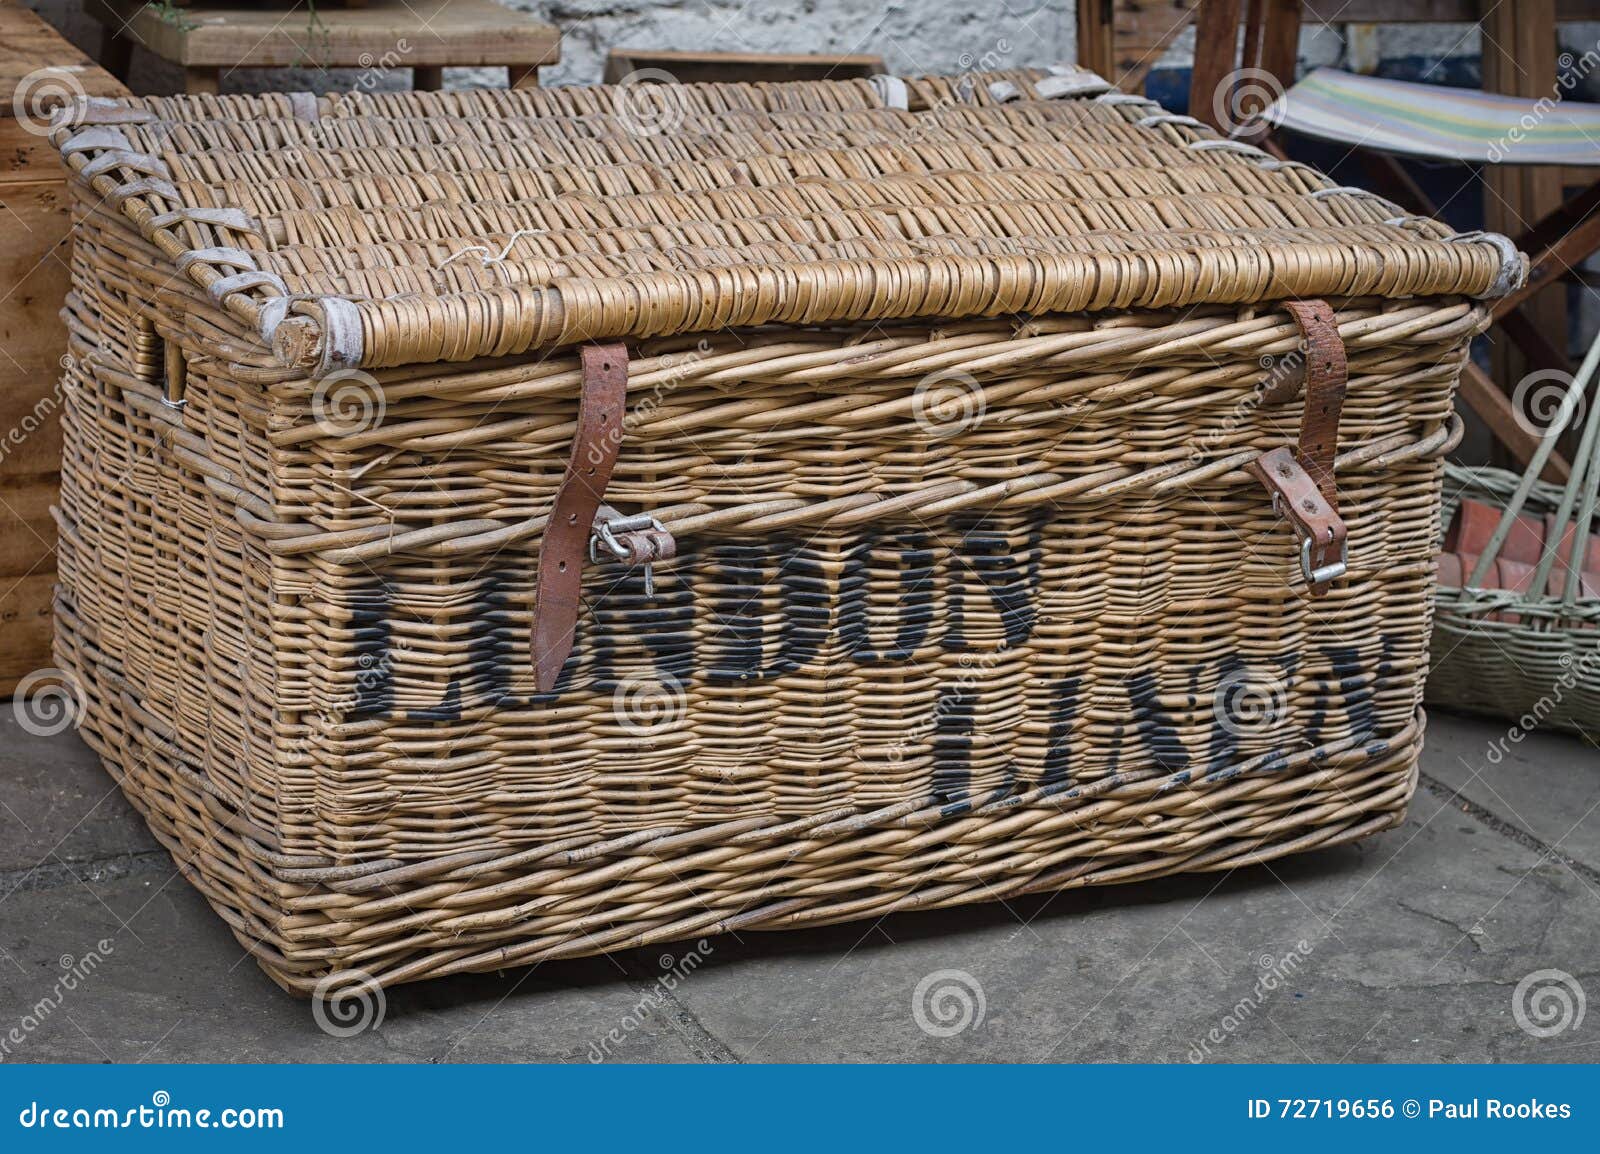 bric-ÃÂ -brac or bric-a-brac - linen - laundry basket - london